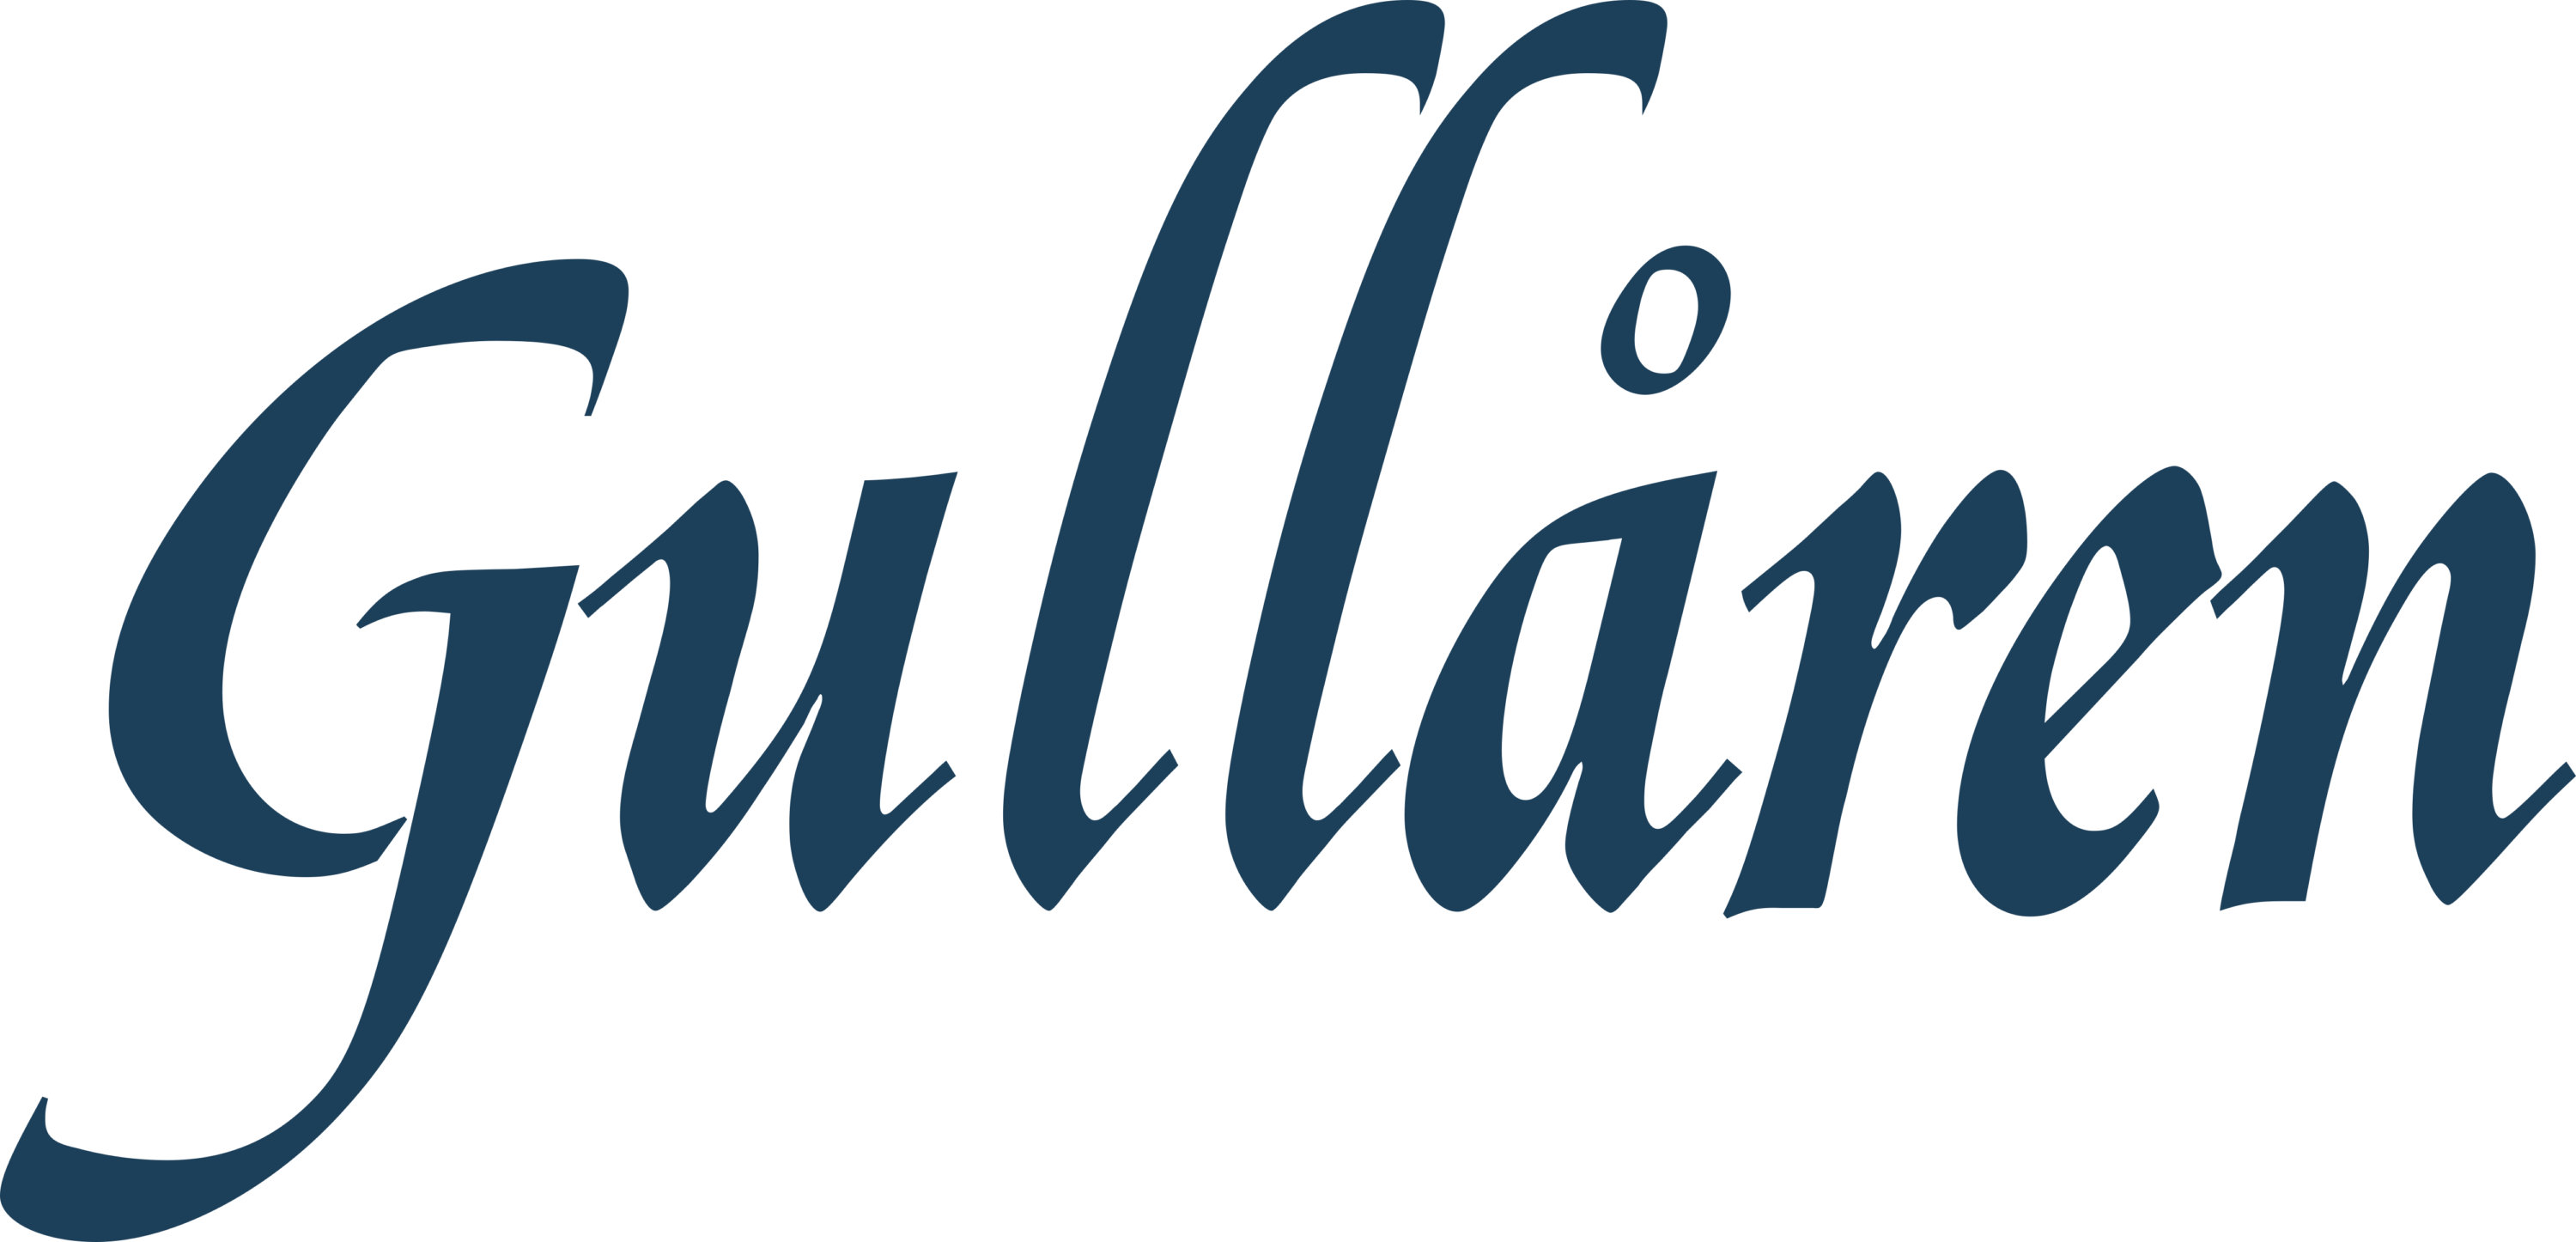 Gullaren Logo